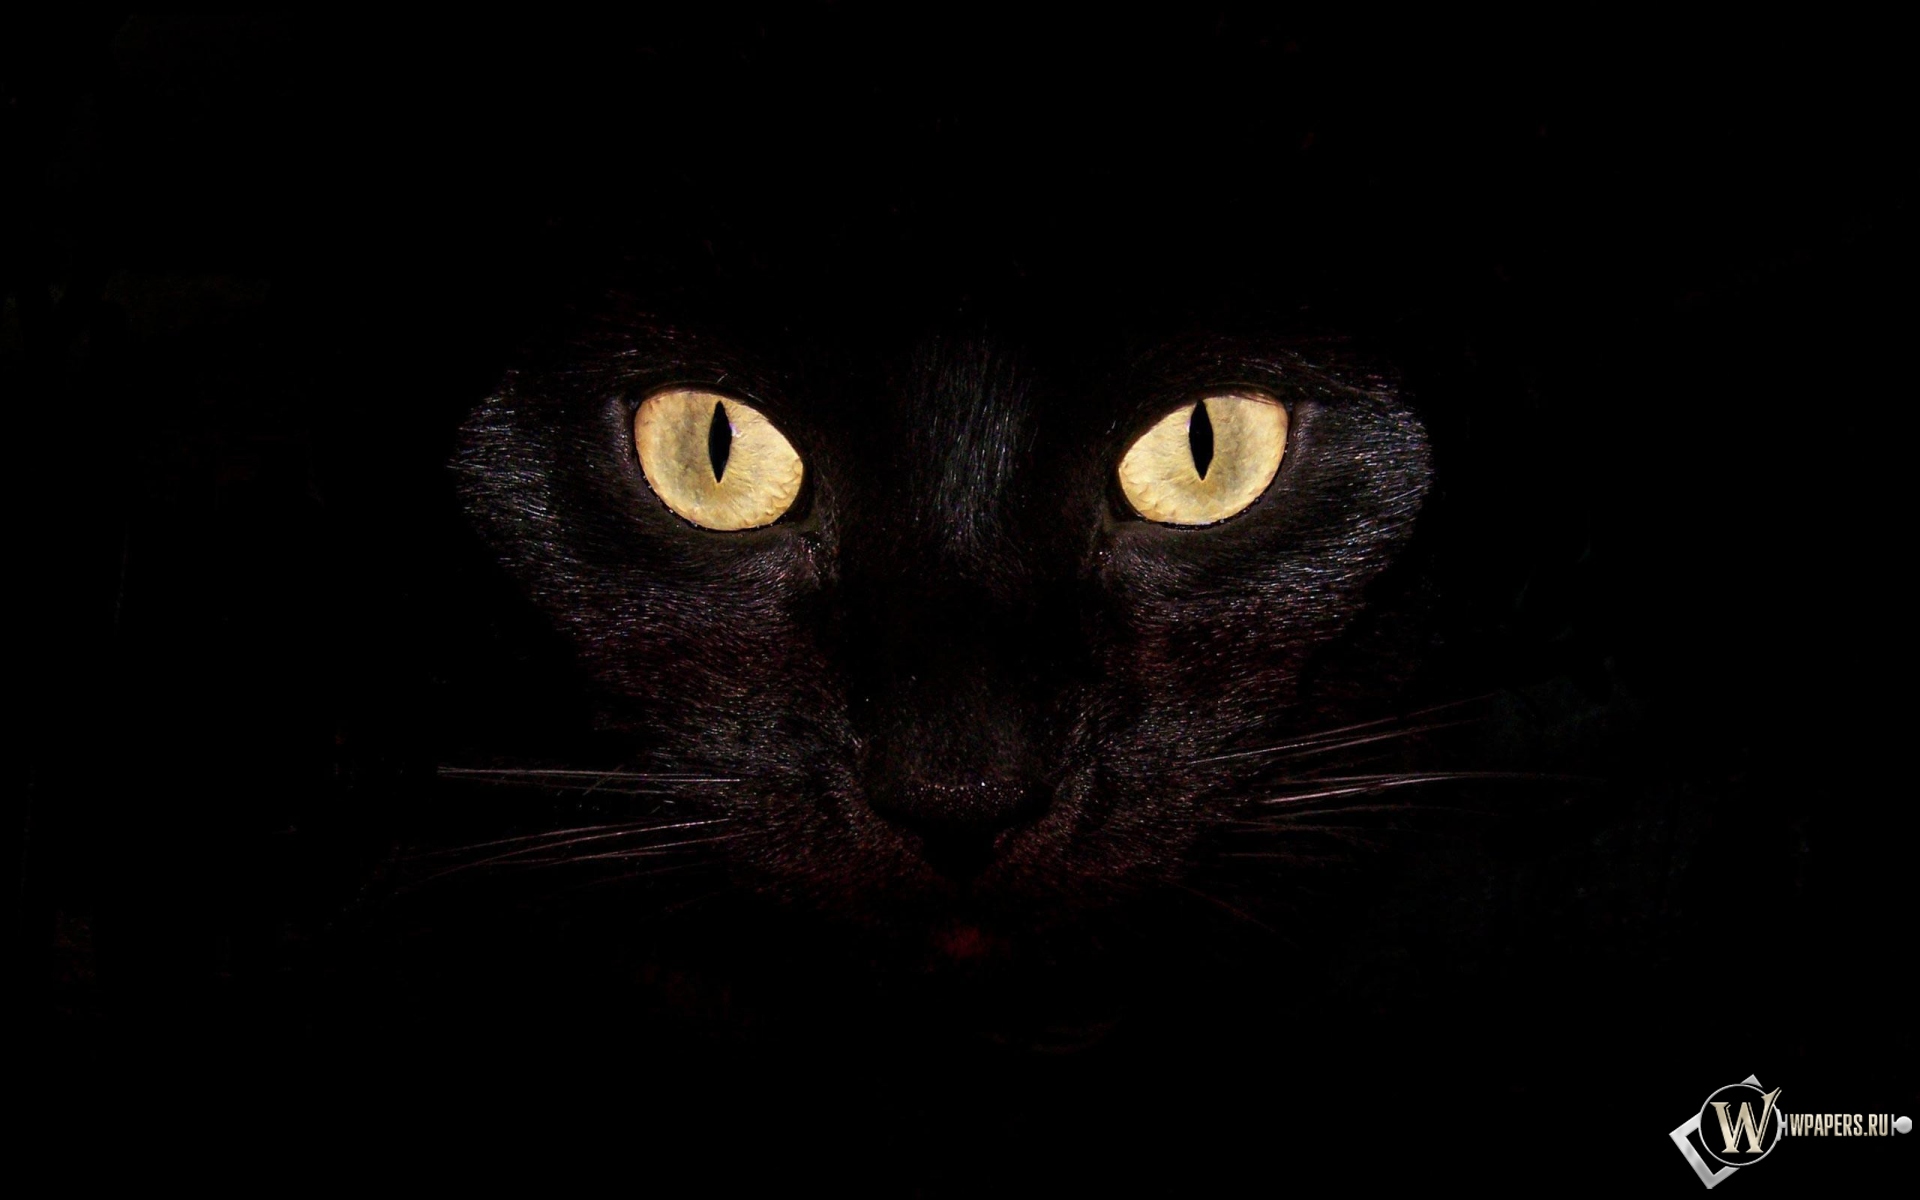 Черная кошка на чернофм фоне 1920x1200